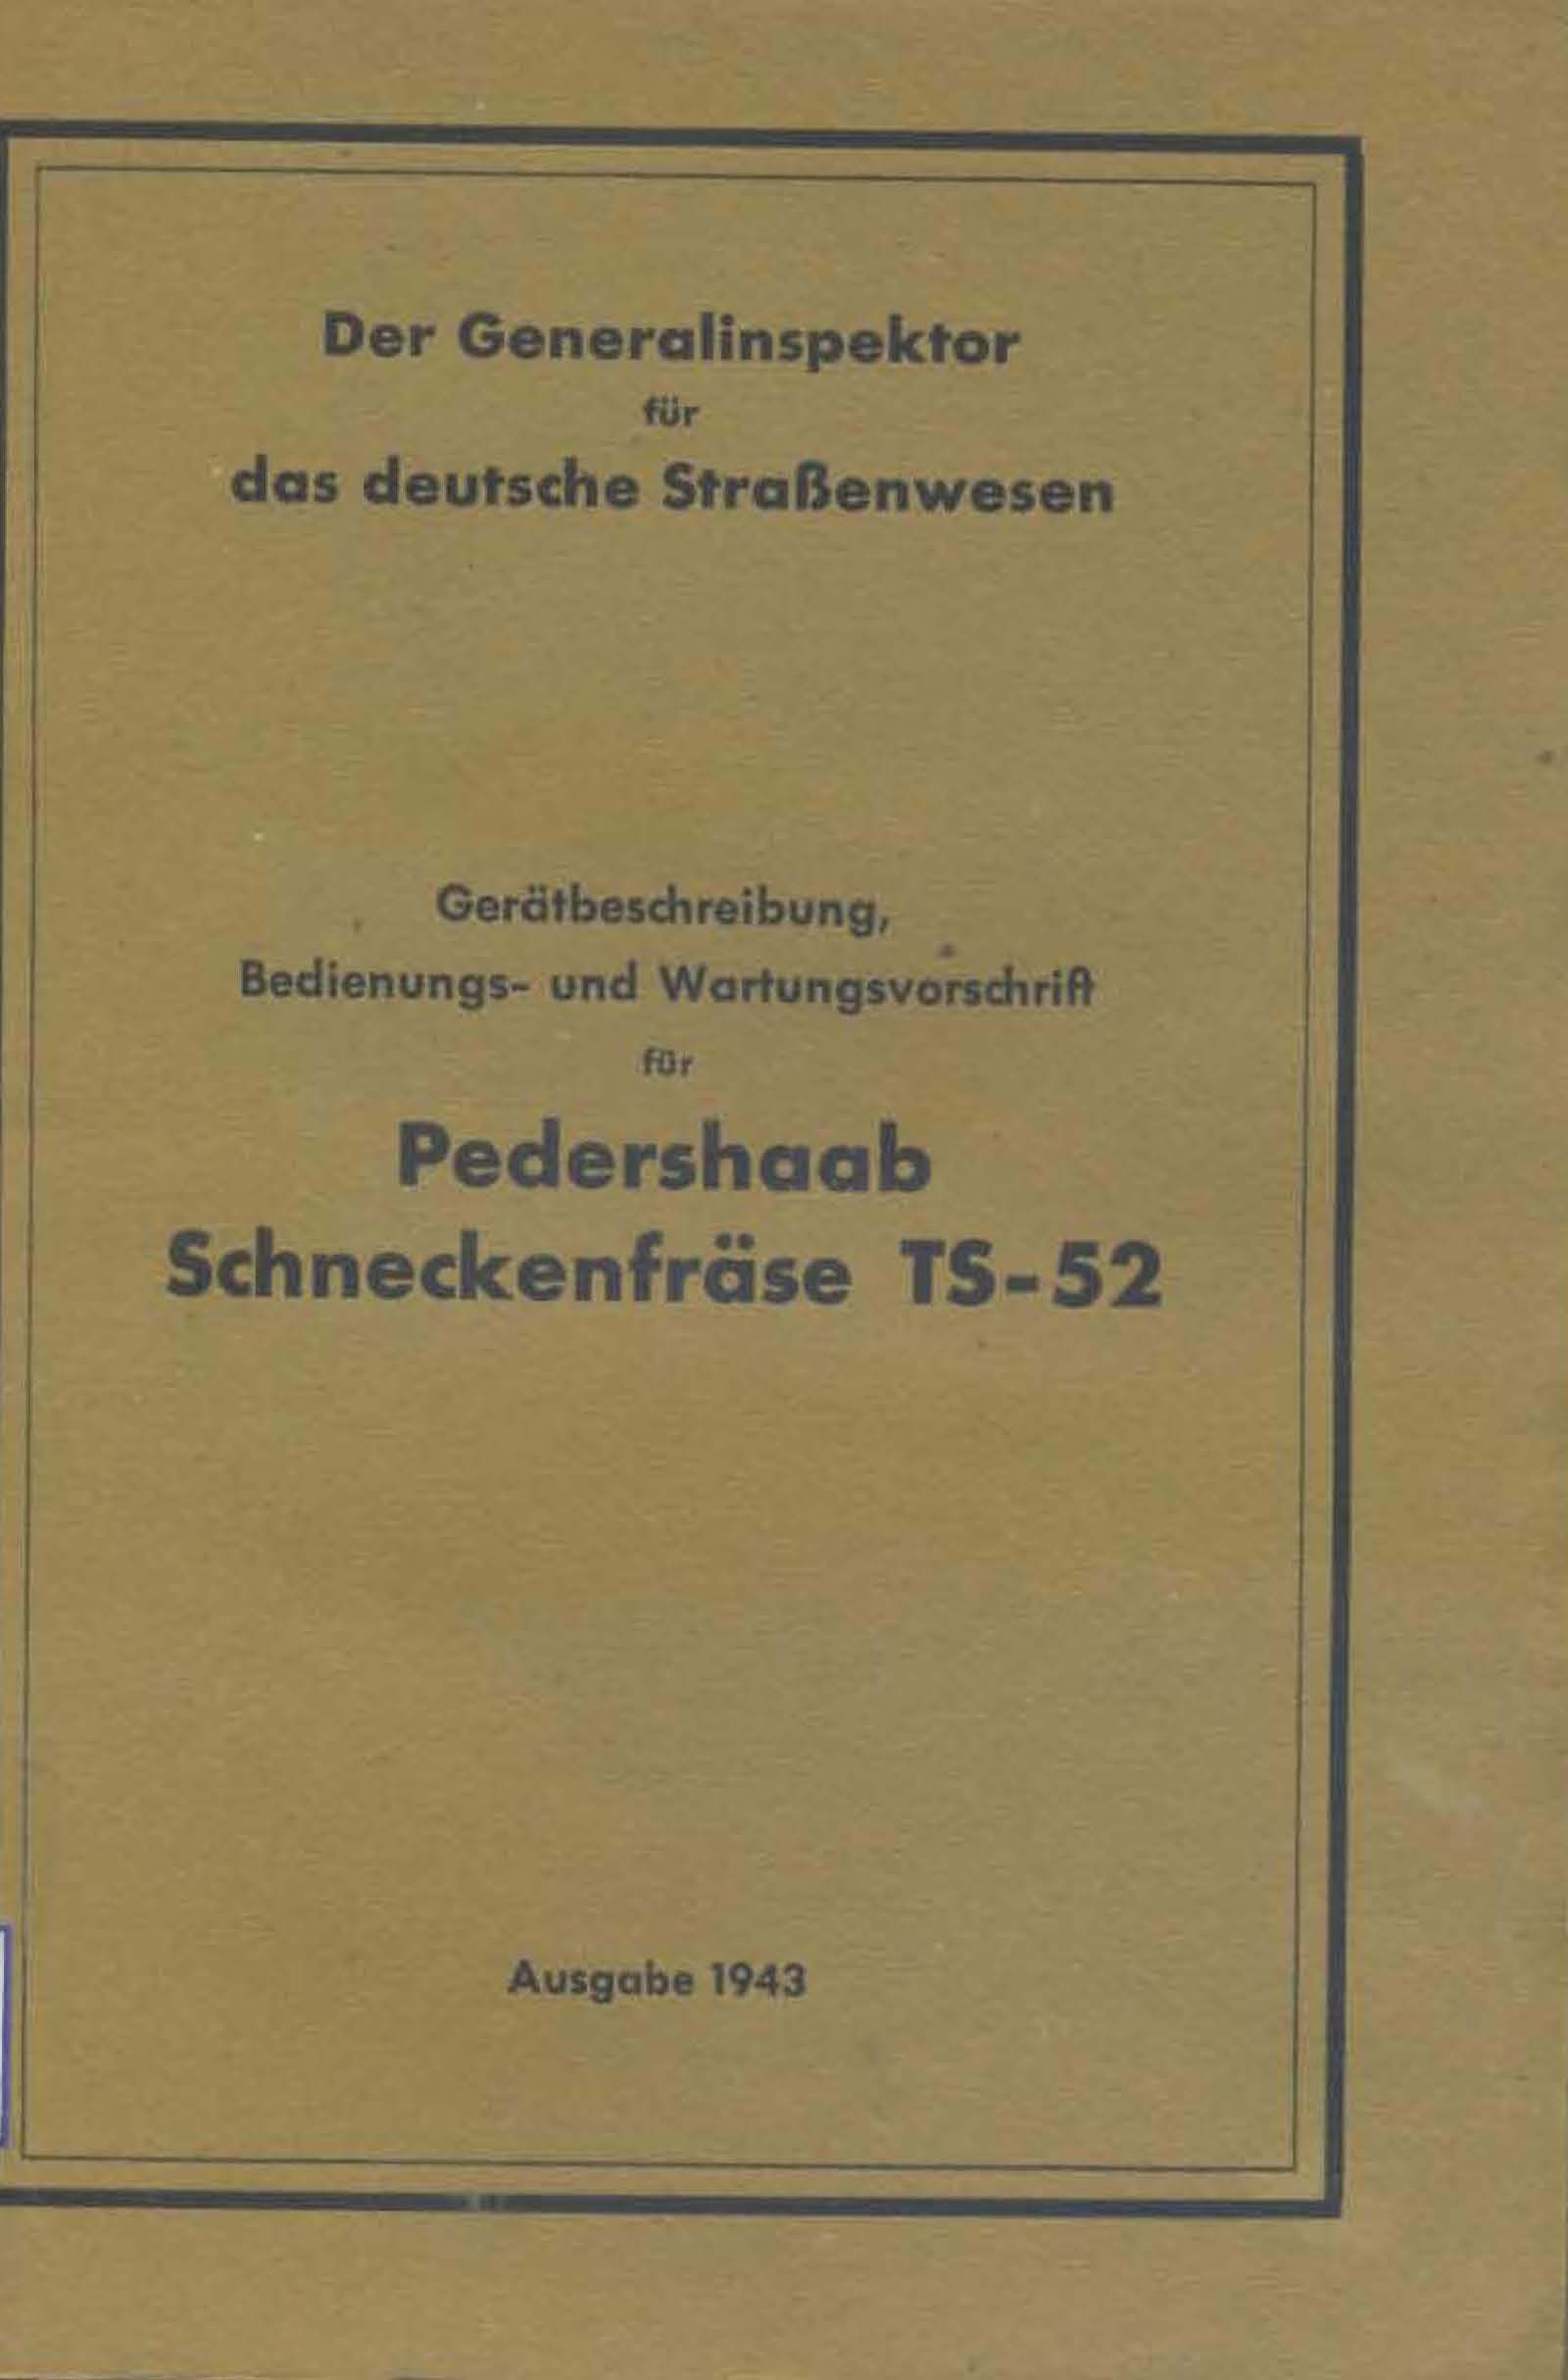 Pedershaab Schneckenfräse TS-52